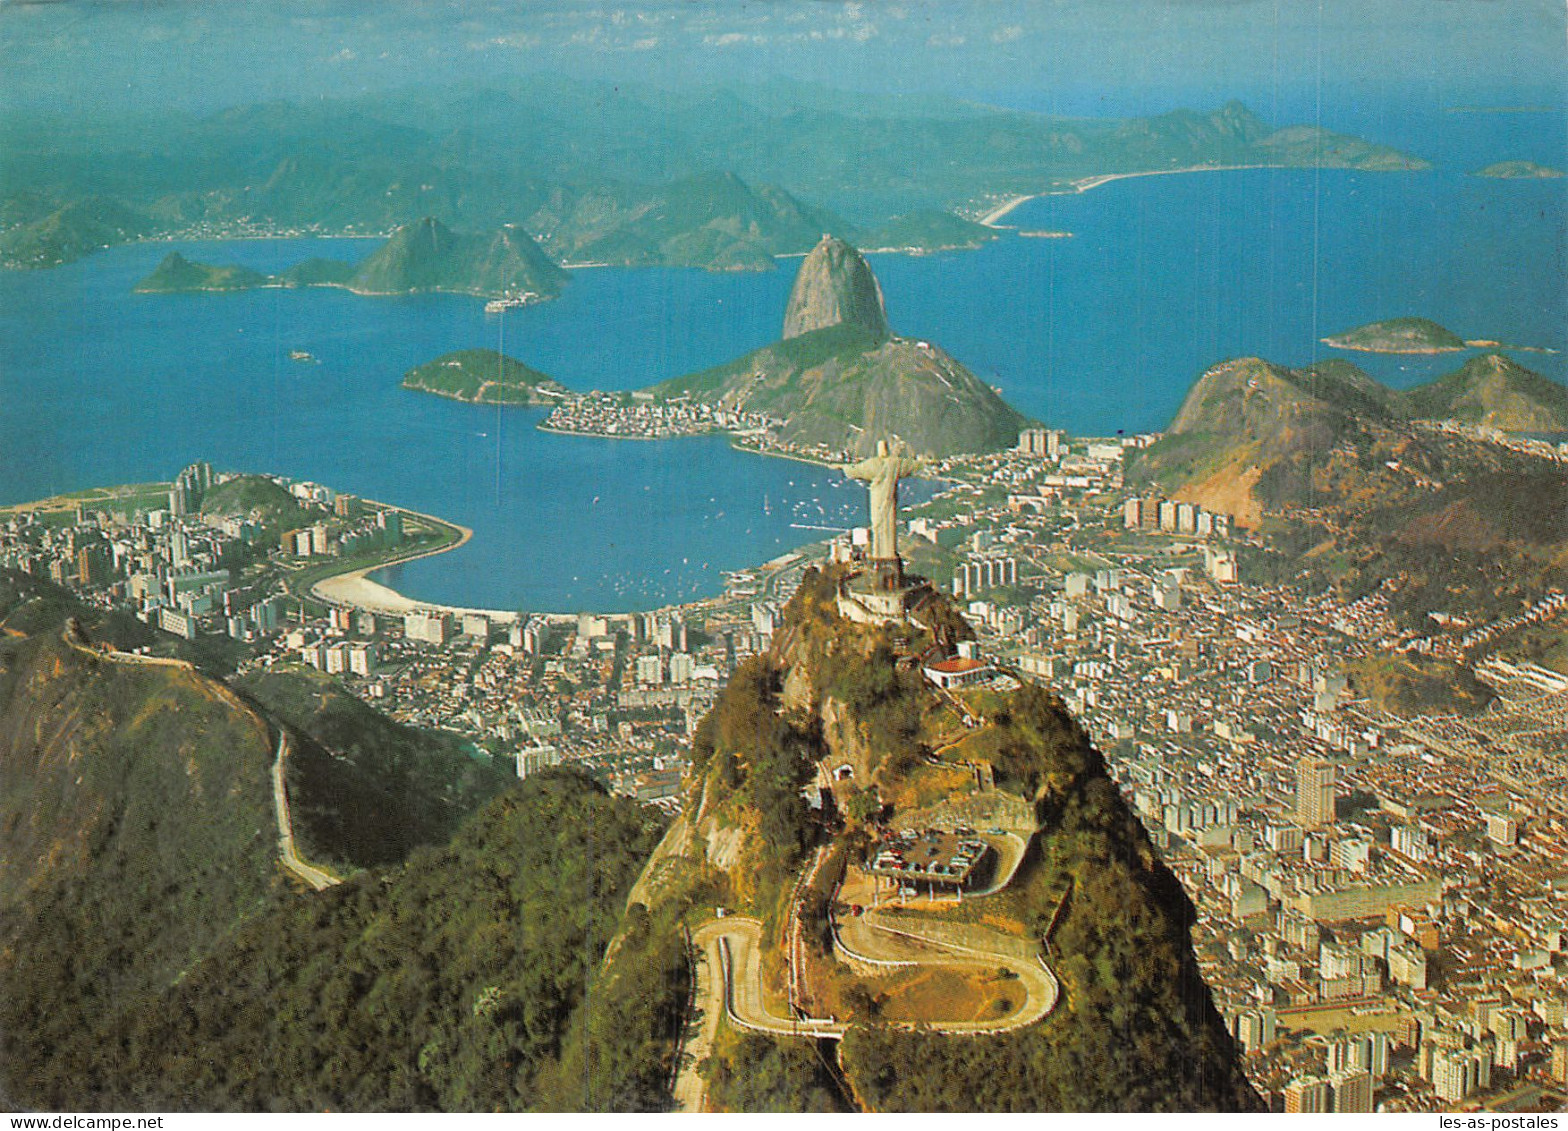 BRESIL RIO DE JANEIRO - Rio De Janeiro